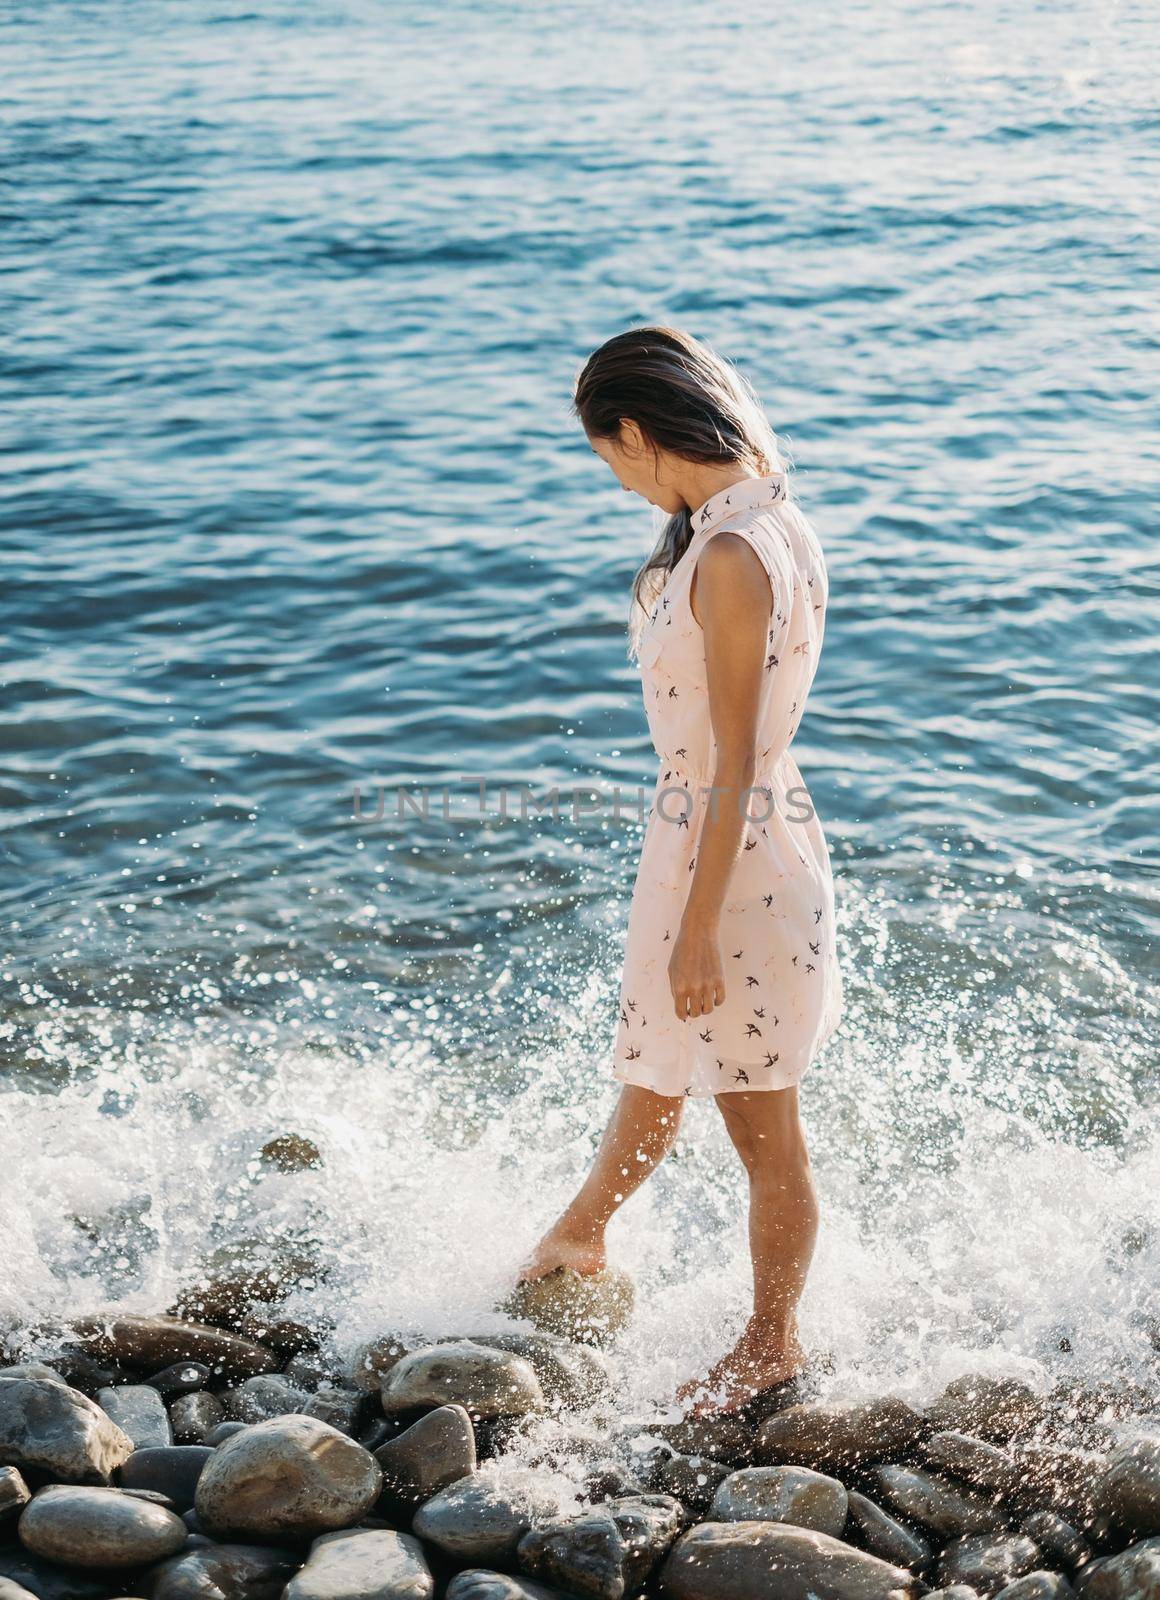 Beautiful woman walking on pebble beach by alexAleksei